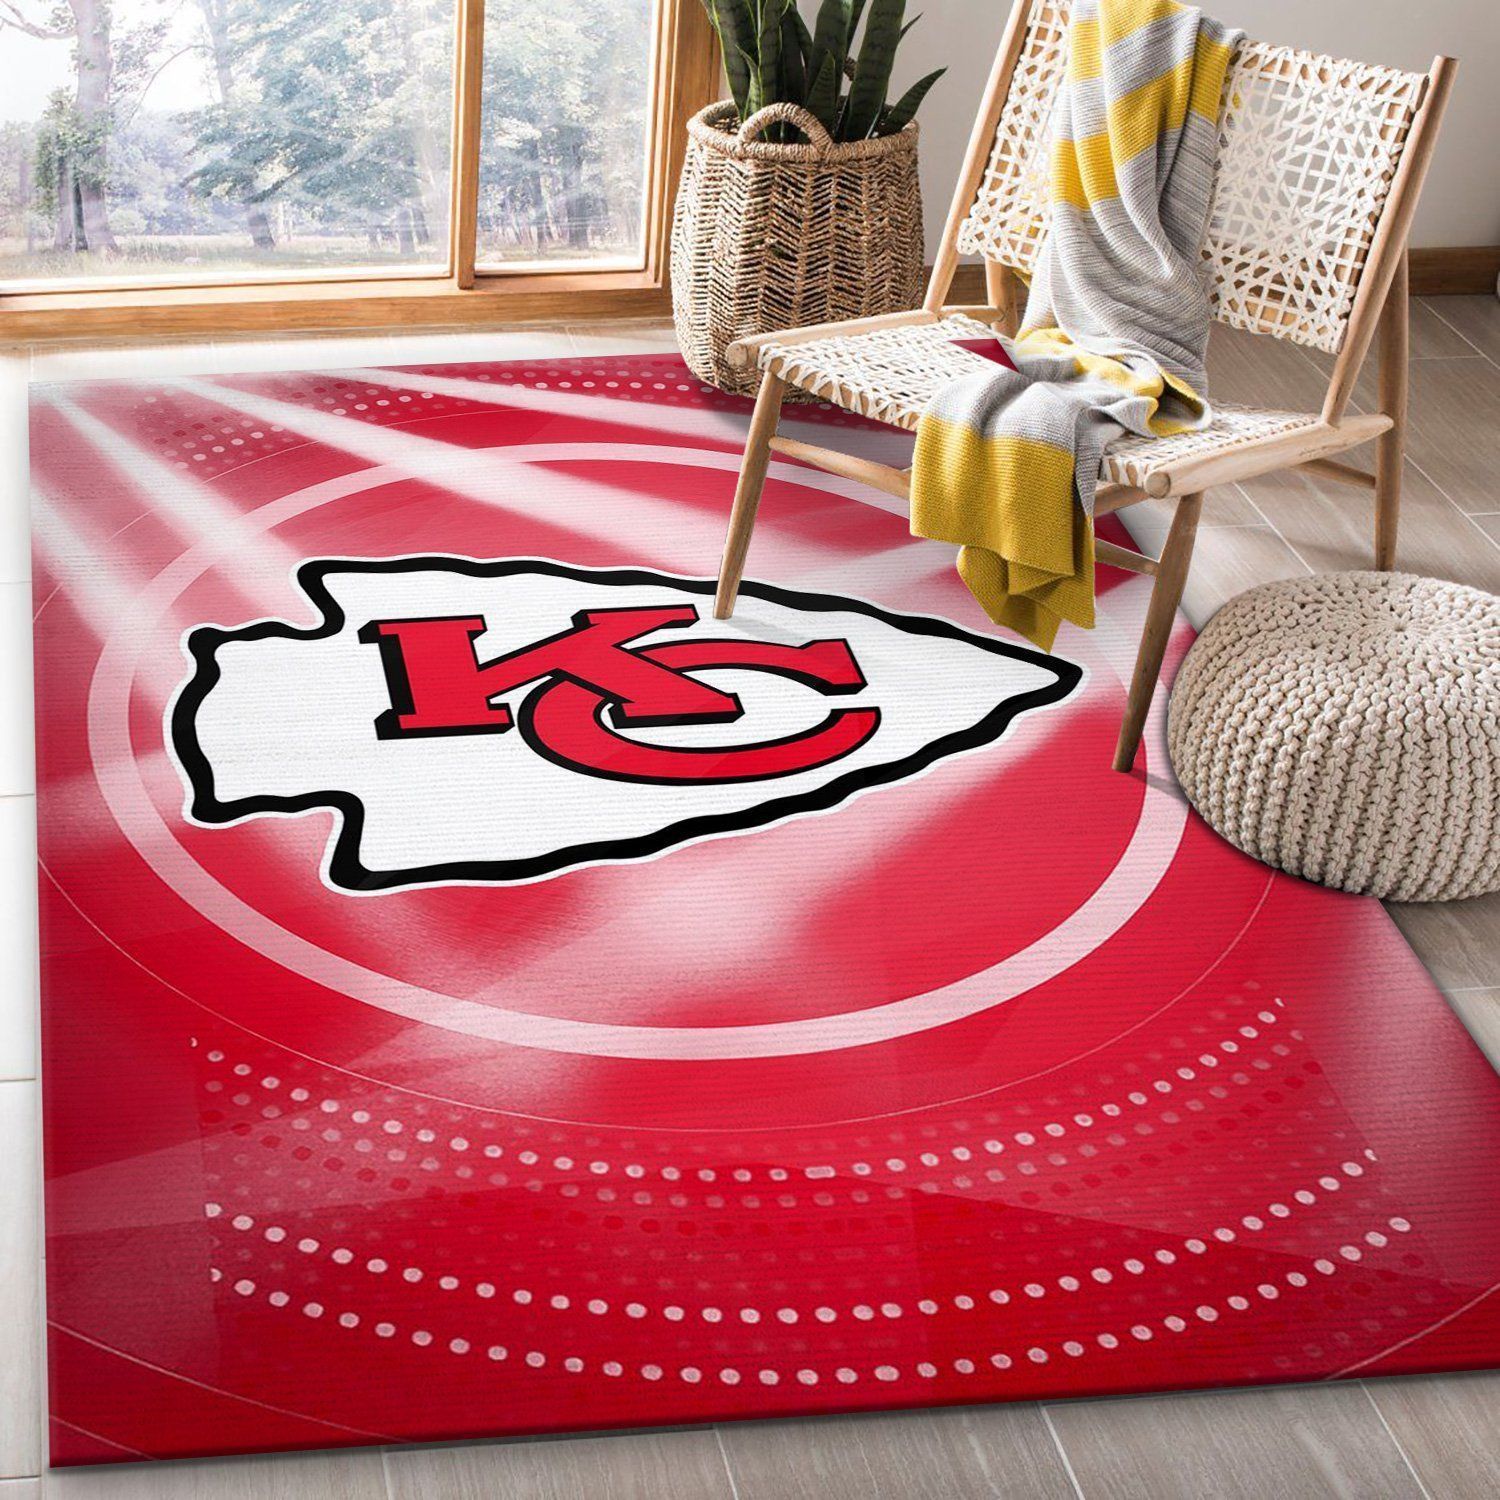 Kansas City Chiefs NFL Rug Bedroom Rug Home Decor Floor Decor - Indoor Outdoor Rugs